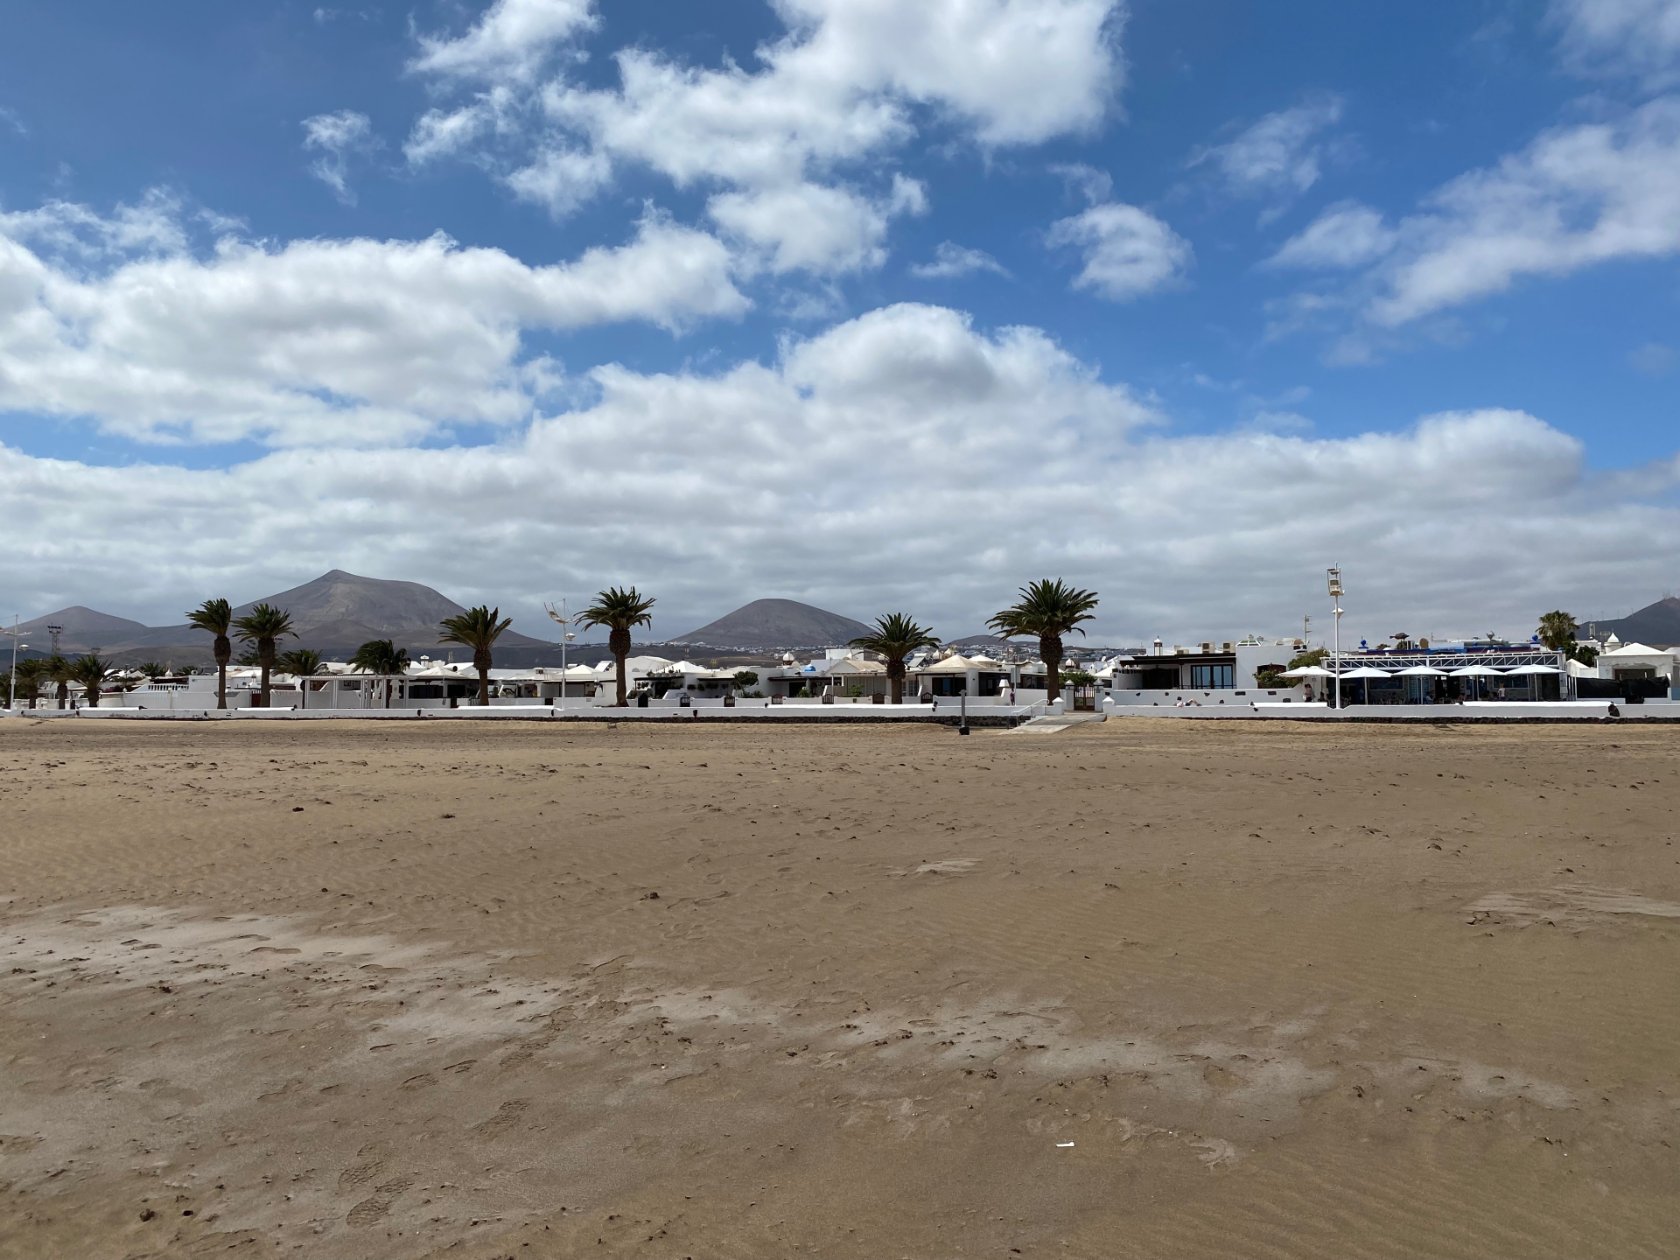 Playa Honda à Lanzarote - 5 petits paradis européens pour salariés en télétravail et nomades digitaux